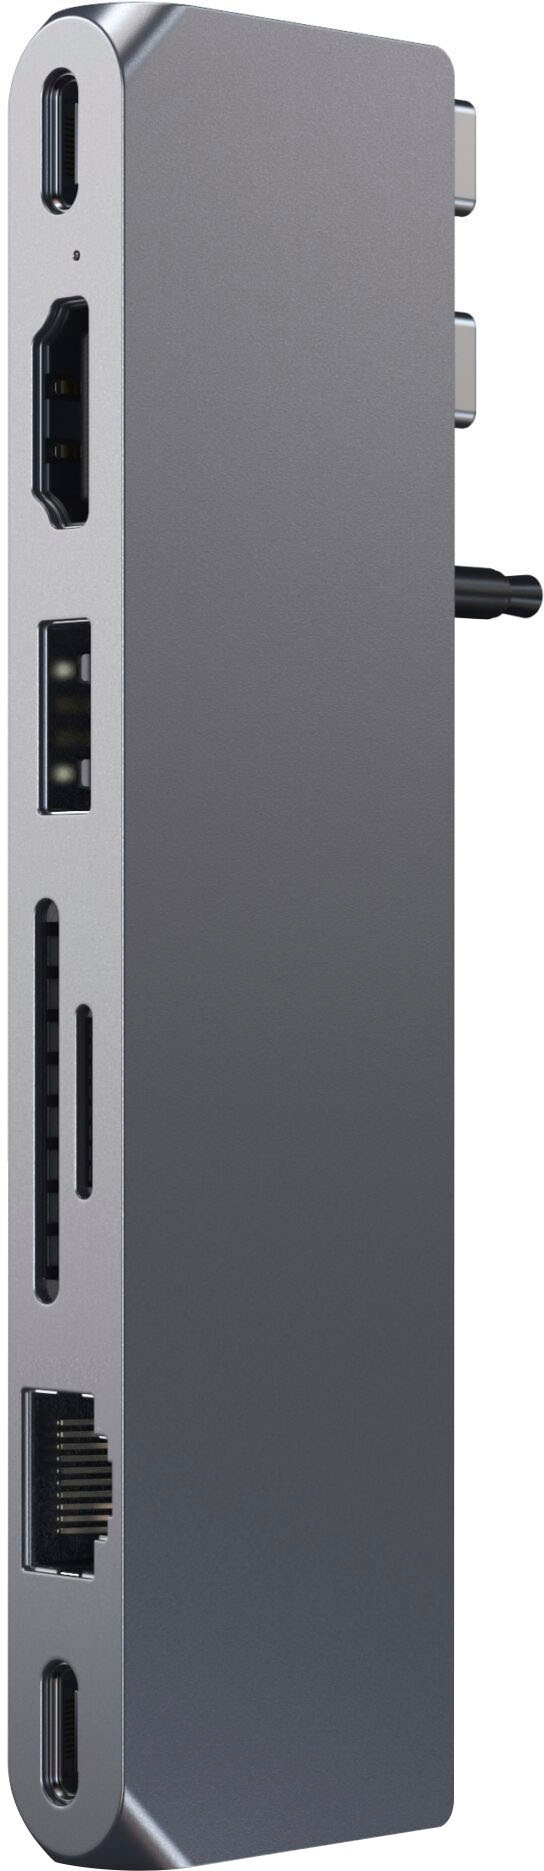 Satechi USB-Adapter »Pro Hub Max«